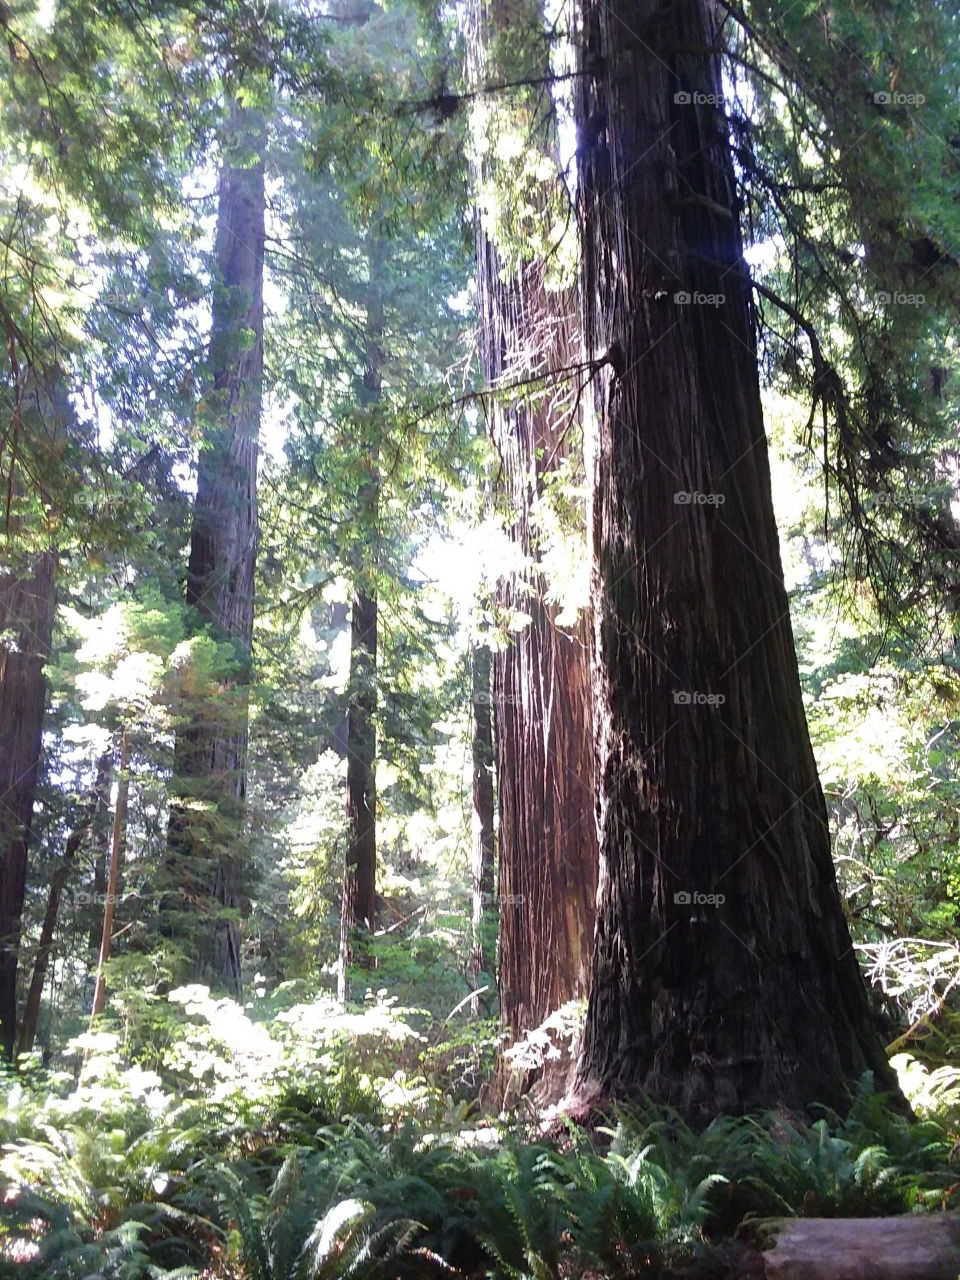 California redwoods in Humboldt